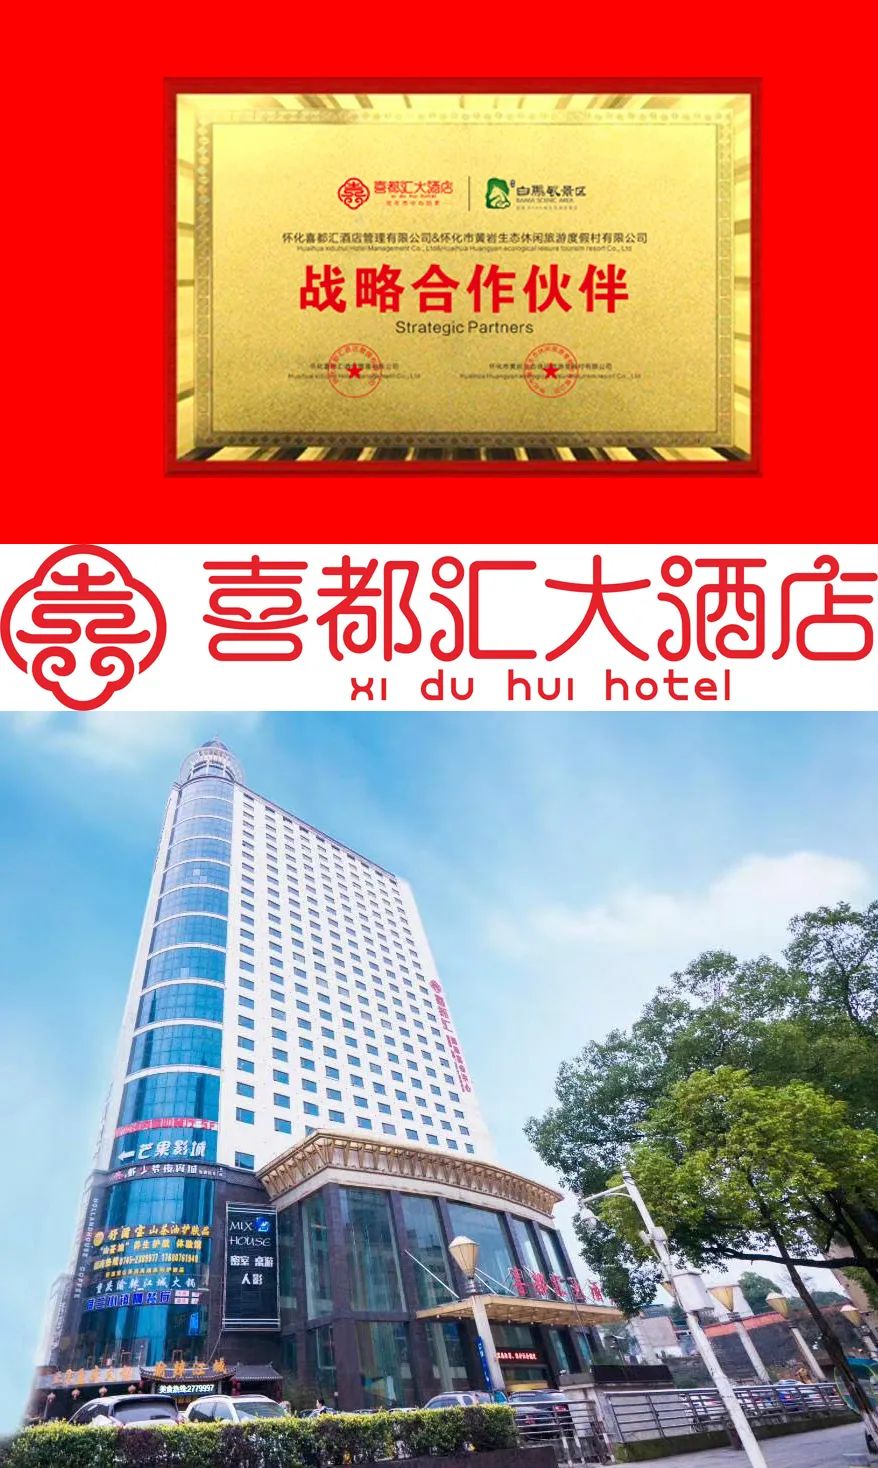 黄岩白马景区战略合作伙伴喜都汇大酒店(15707455252刘经理)